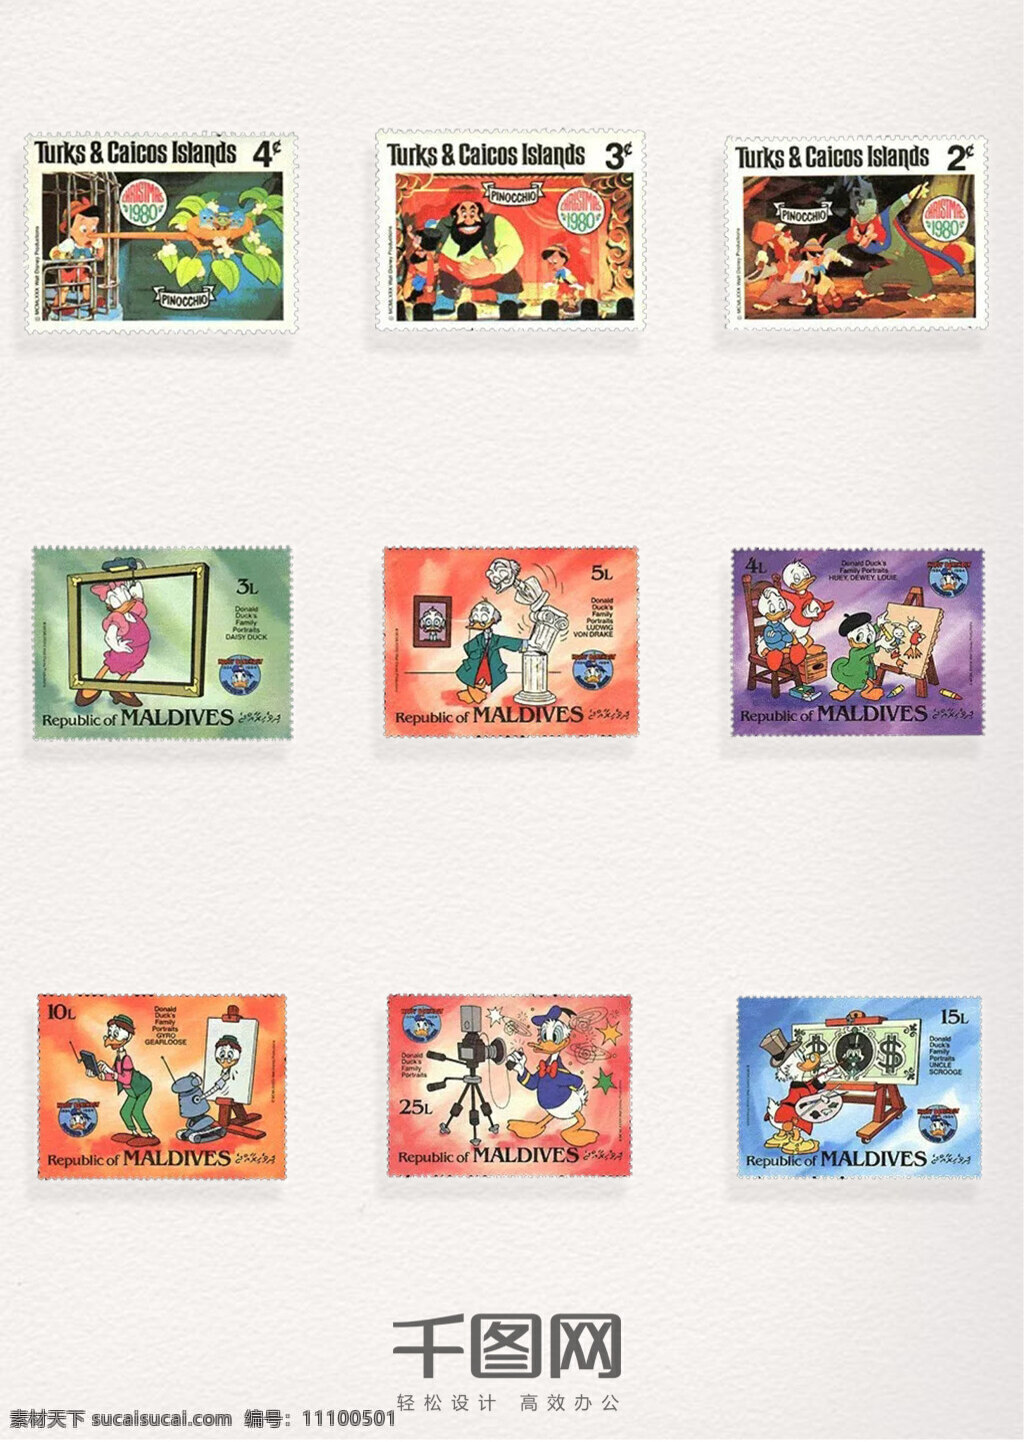 卡通动画 图案 邮票 元素 动画邮票 卡通图案 动画 邮票元素 邮票图案 邮票装饰元素 彩色邮票